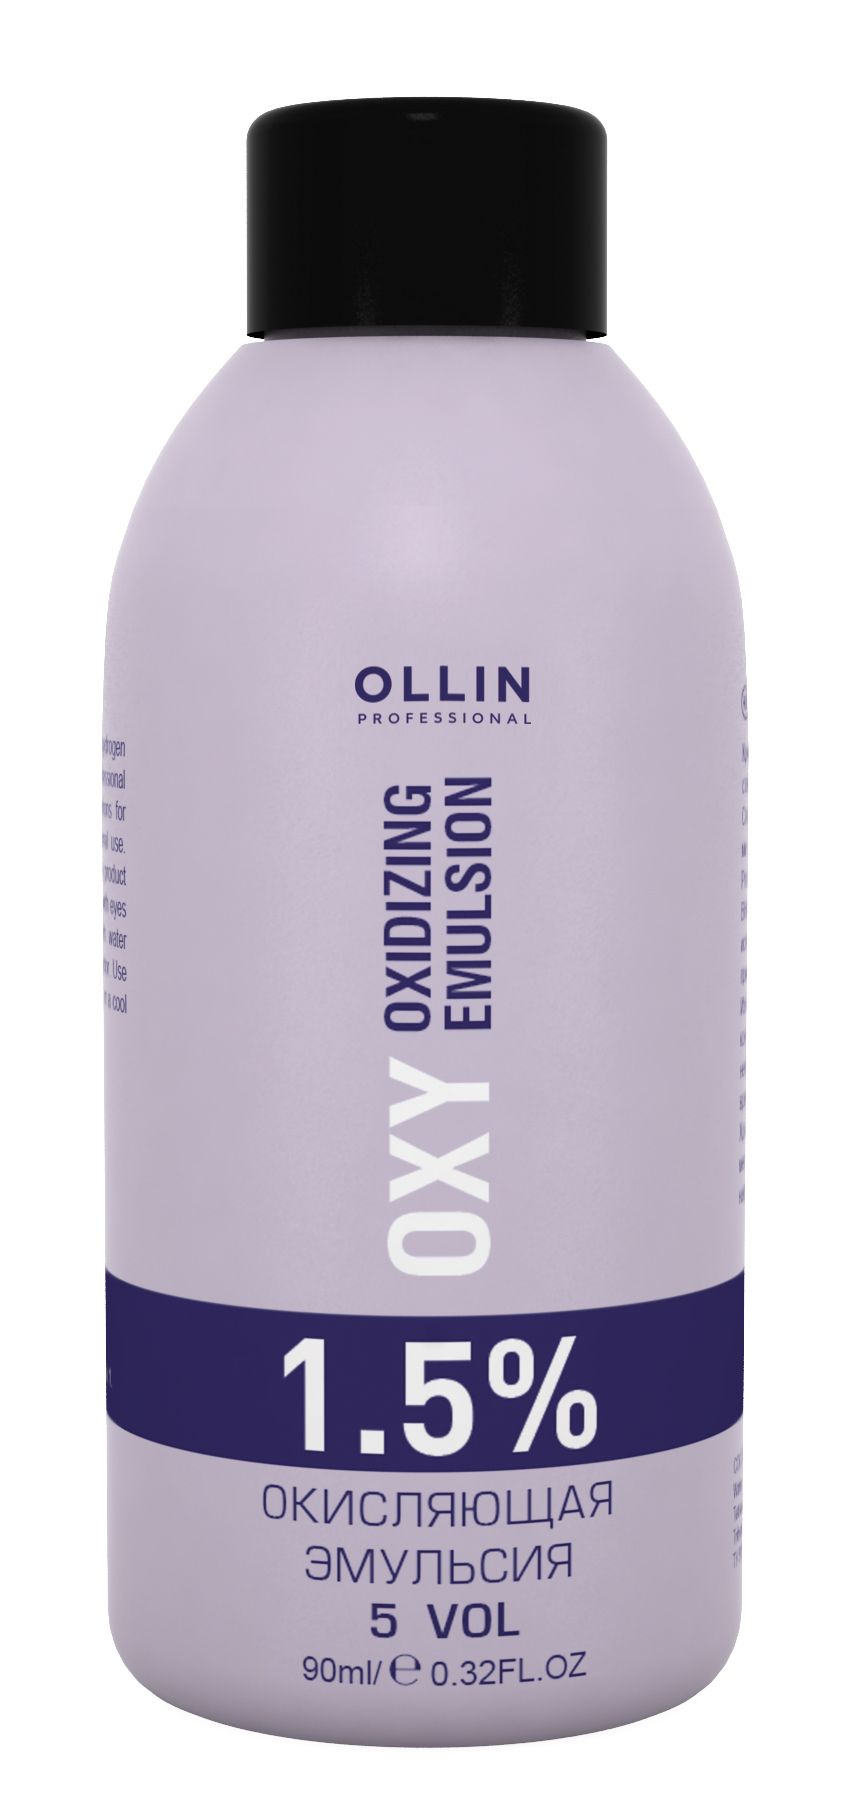 Ollin Professional Performance OXY Oxidizing Emulsion 1,5% 5vol. Окисляющая эмульсия 90 мл